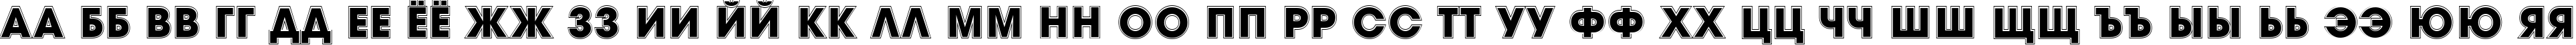 Пример написания русского алфавита шрифтом a_AvanteTitulGr Heavy